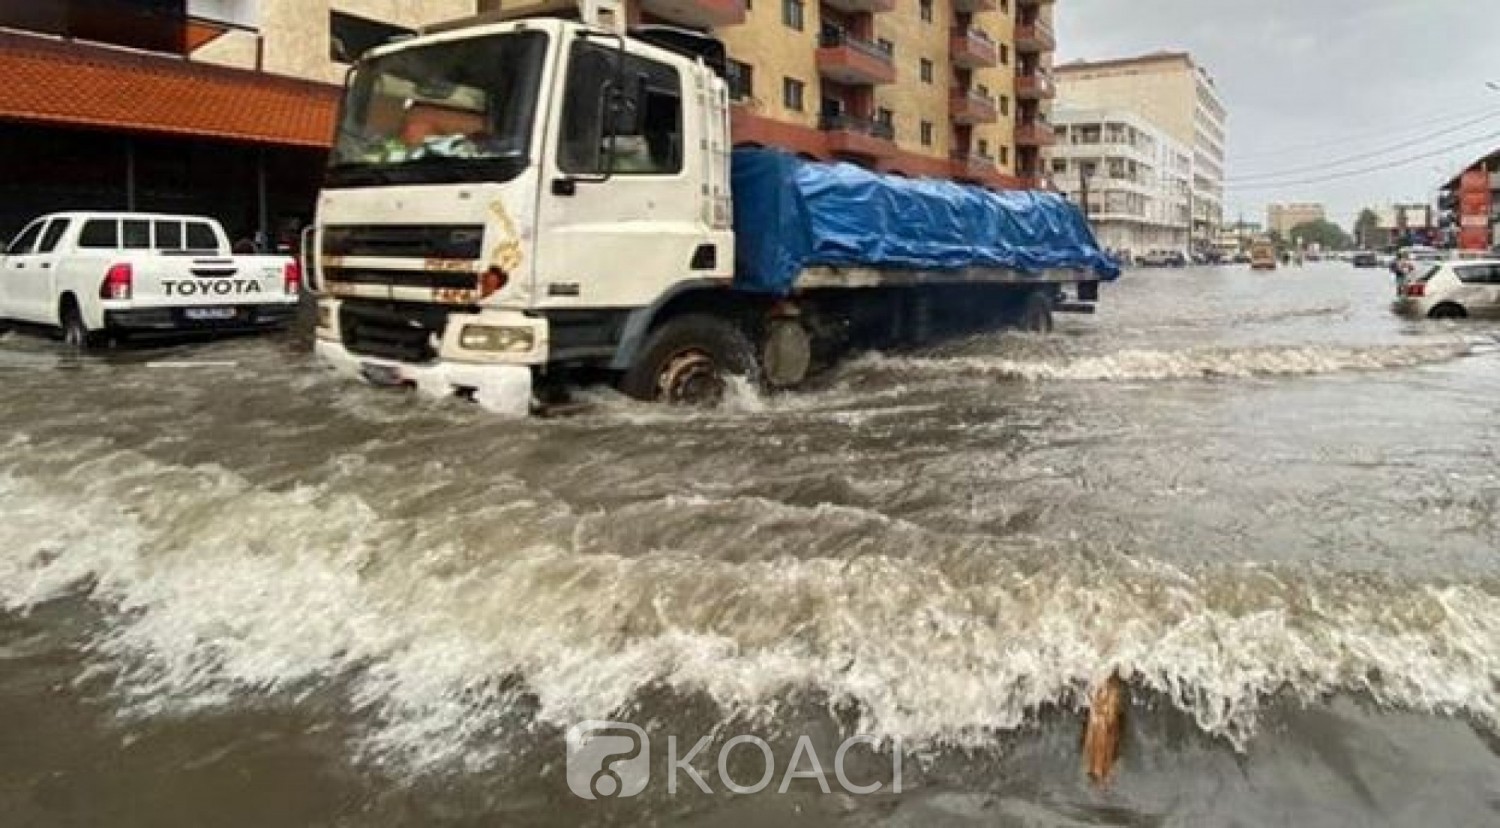 Côte d'Ivoire : Saison des pluies déjà trois morts, orages avec risque d'inondation à faible impact ce week-end, alerte la Sodexam